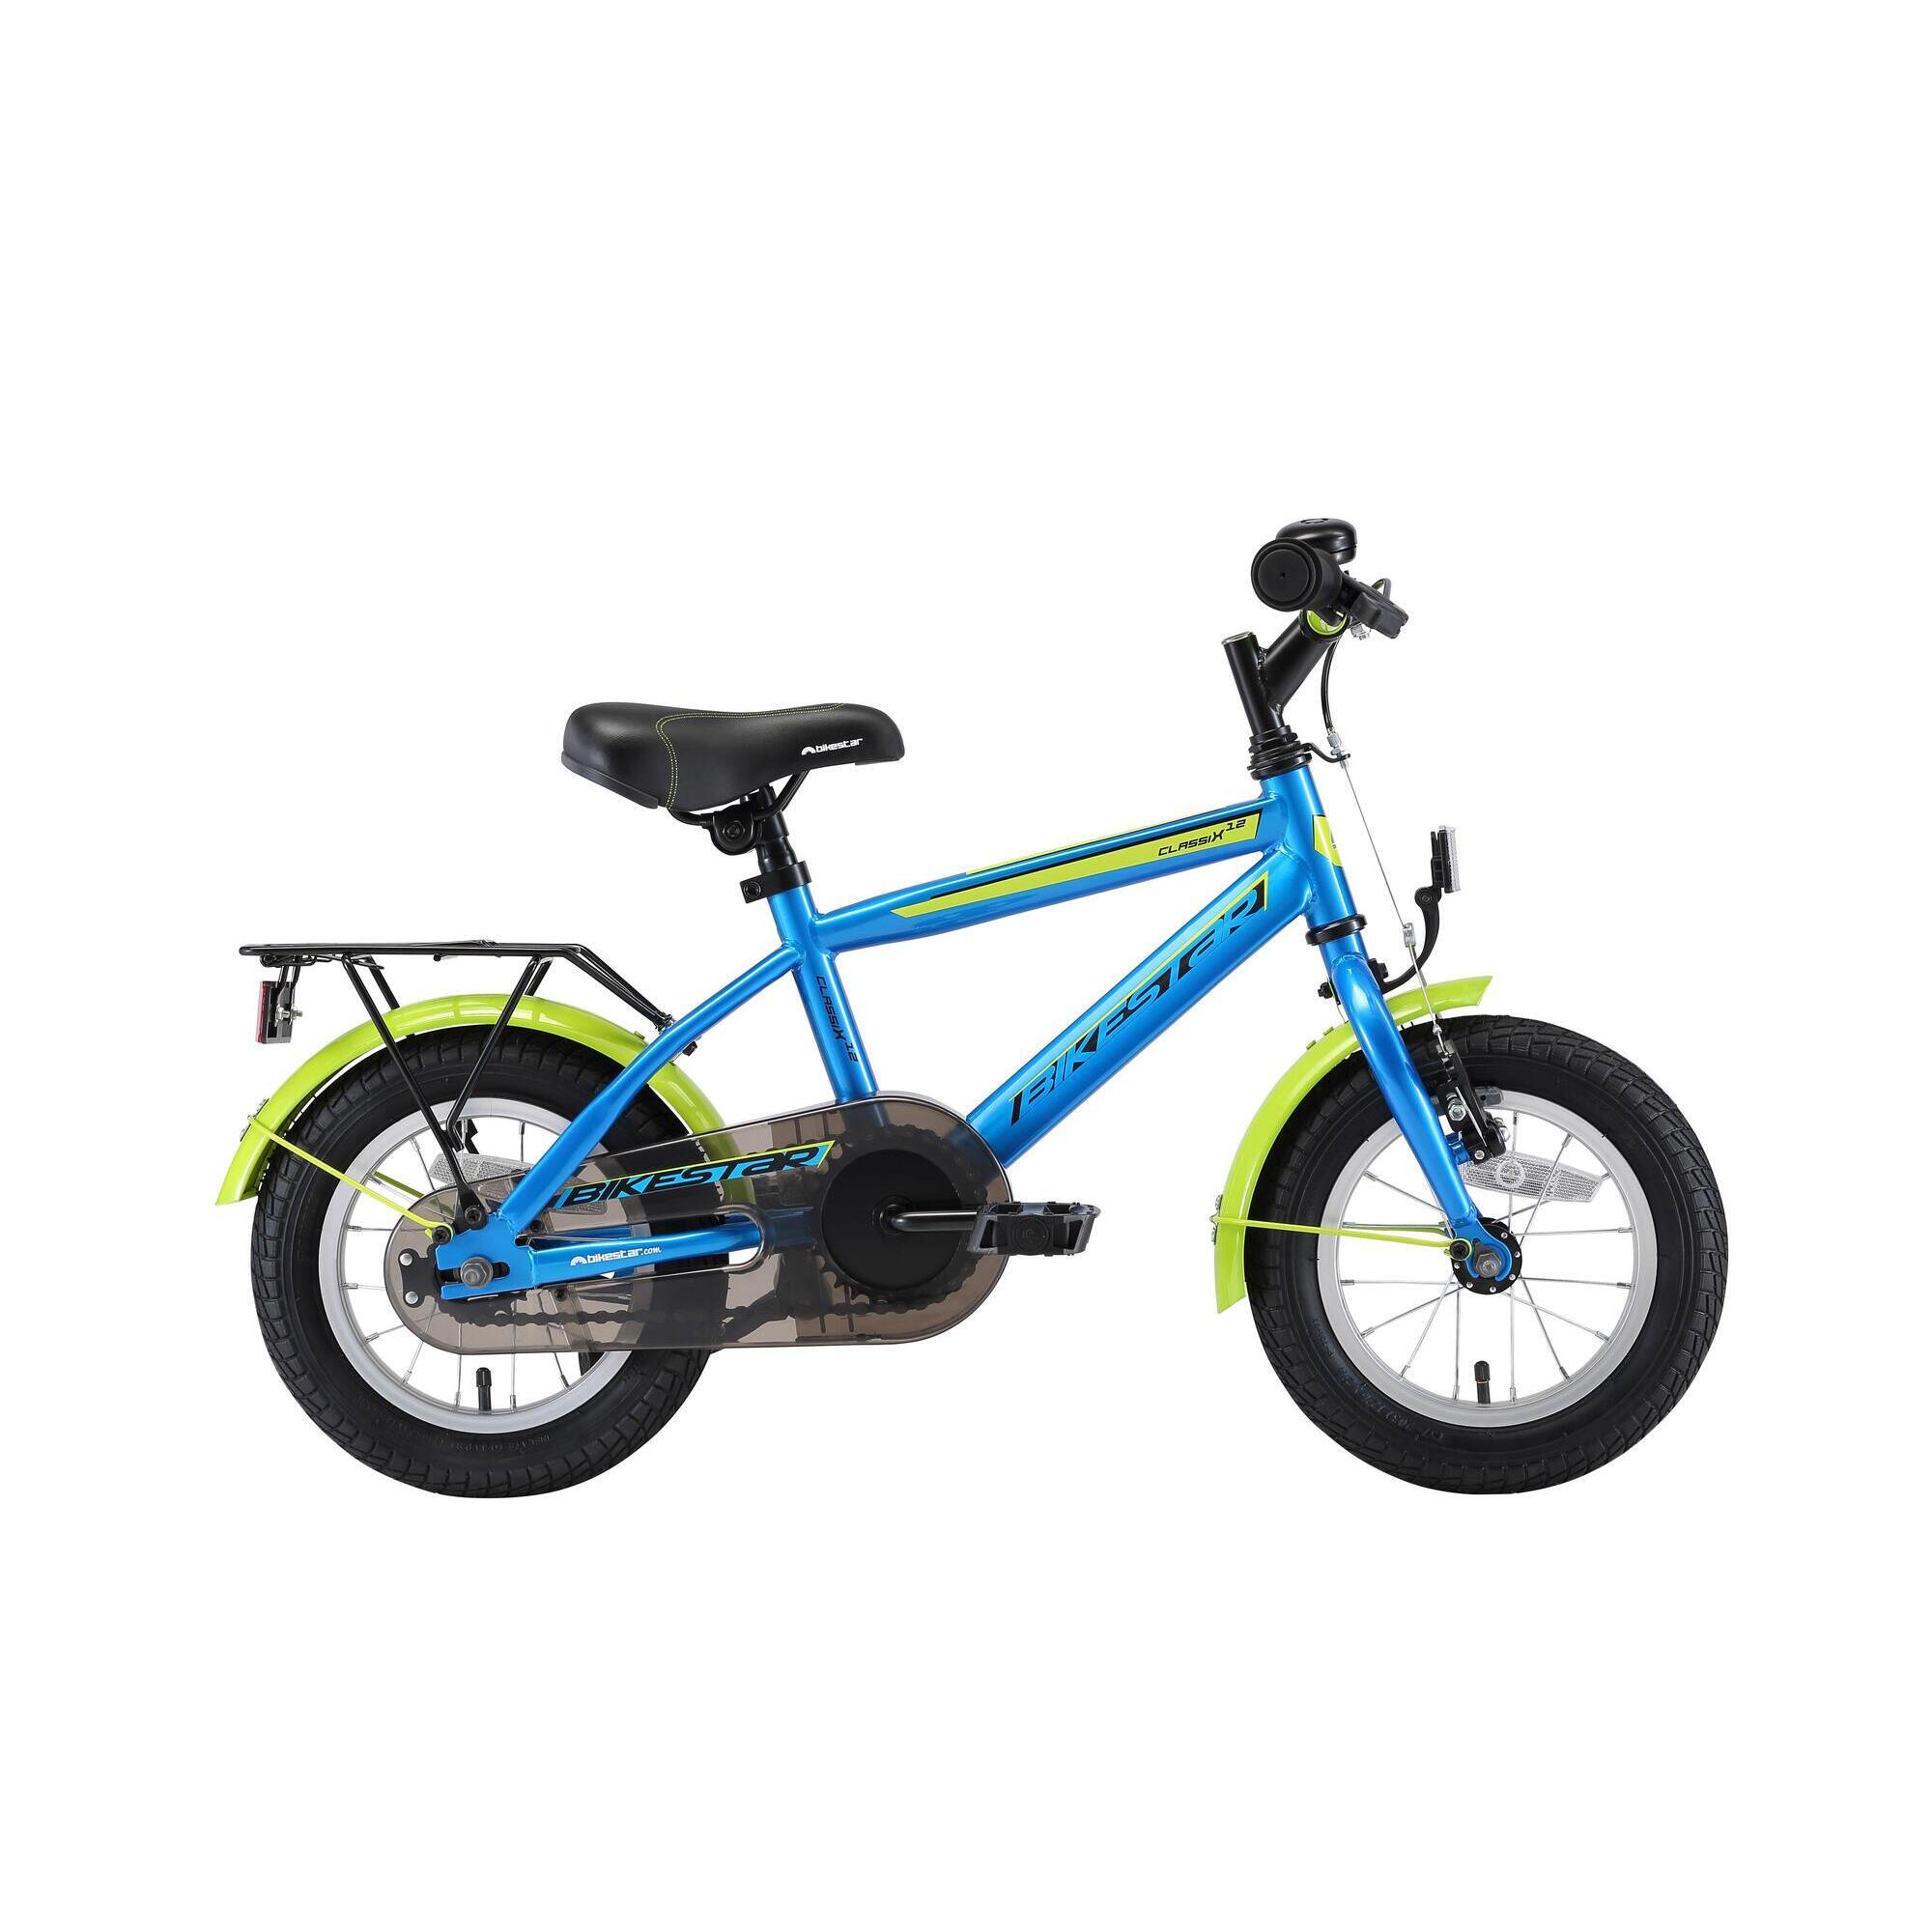 BIKESTAR Vélo Enfant pour Garcons et Filles de 3-4 Ans ★ Bicyclette Enfant 12 Pouces Cruiser avec Freins ★ 